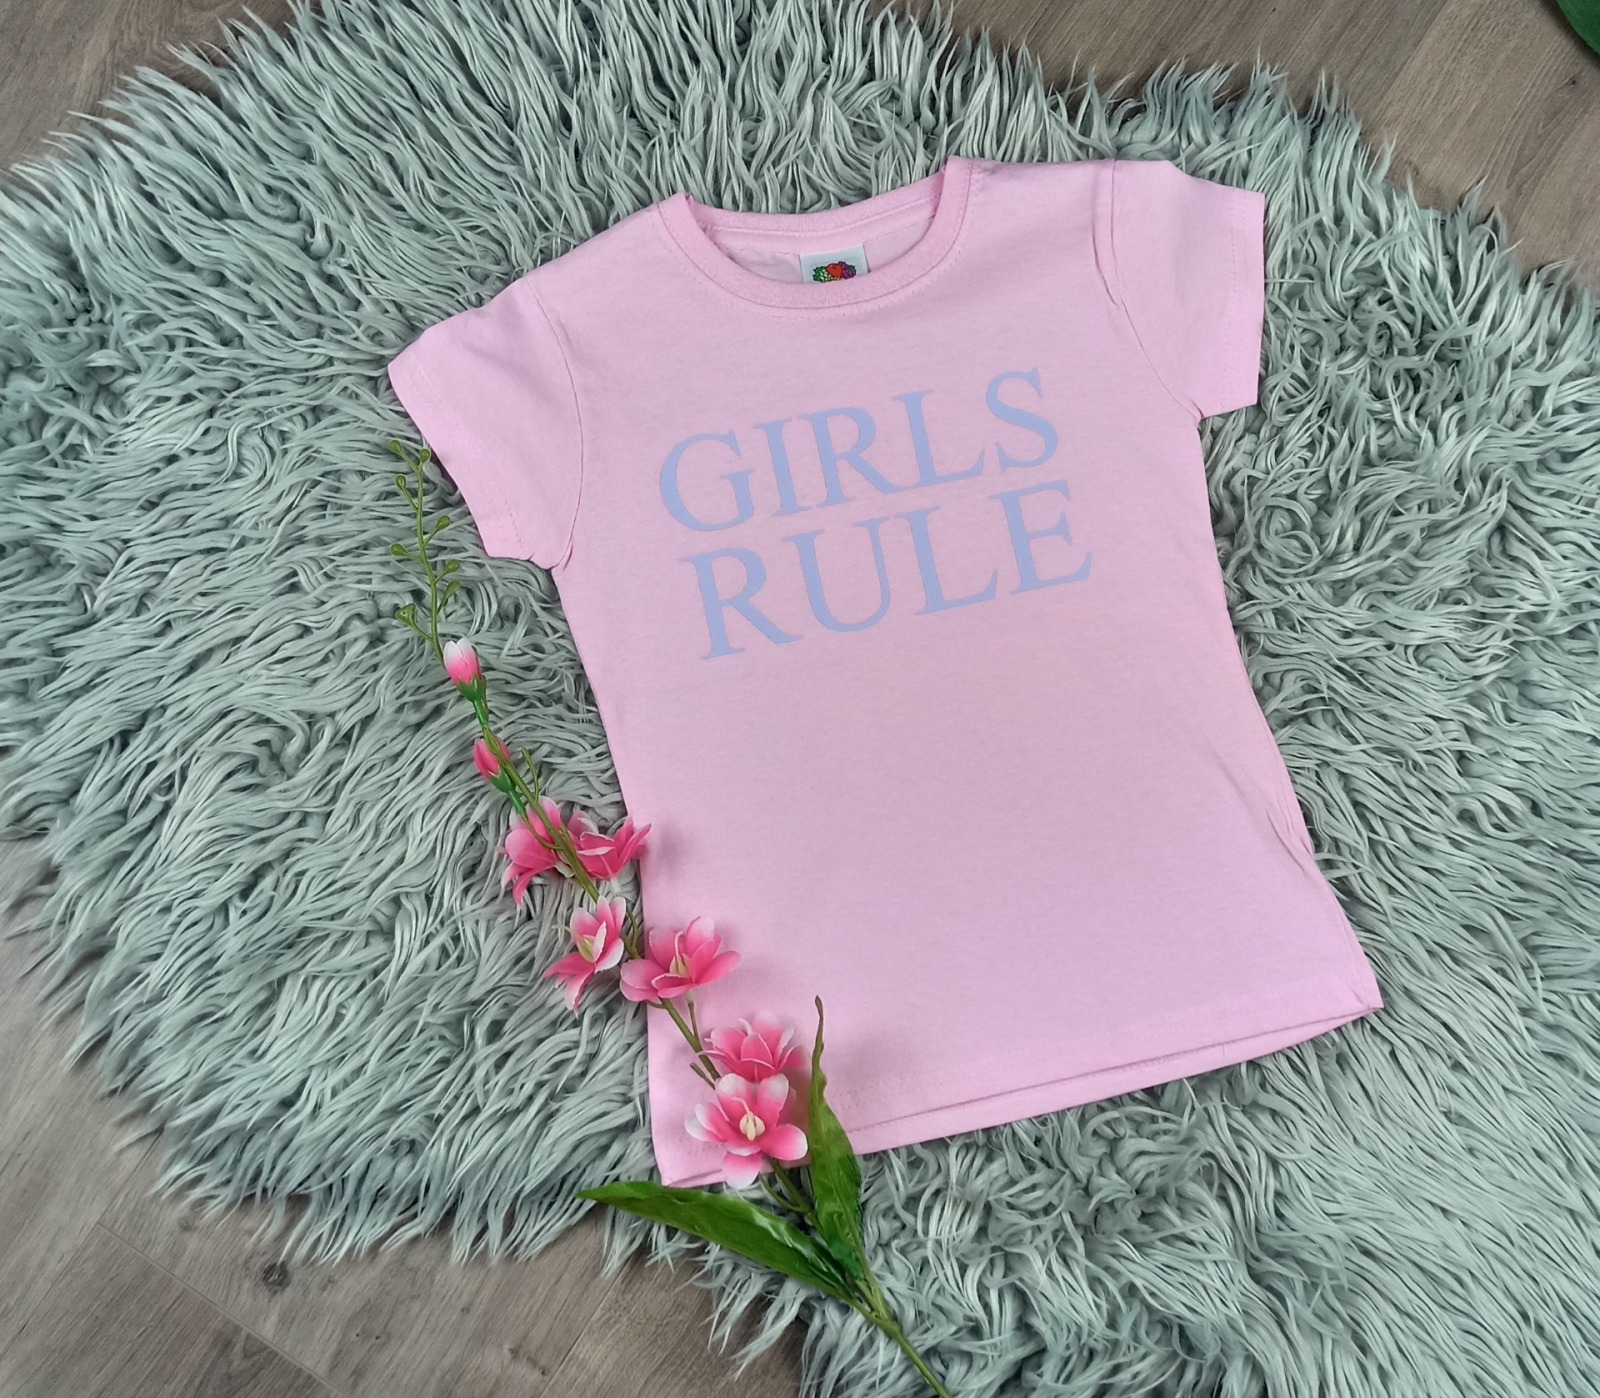 Kauf auf Bestellung bedrucktes T-Shirt light pink für Mädchen Girls Rule Gr 104-116